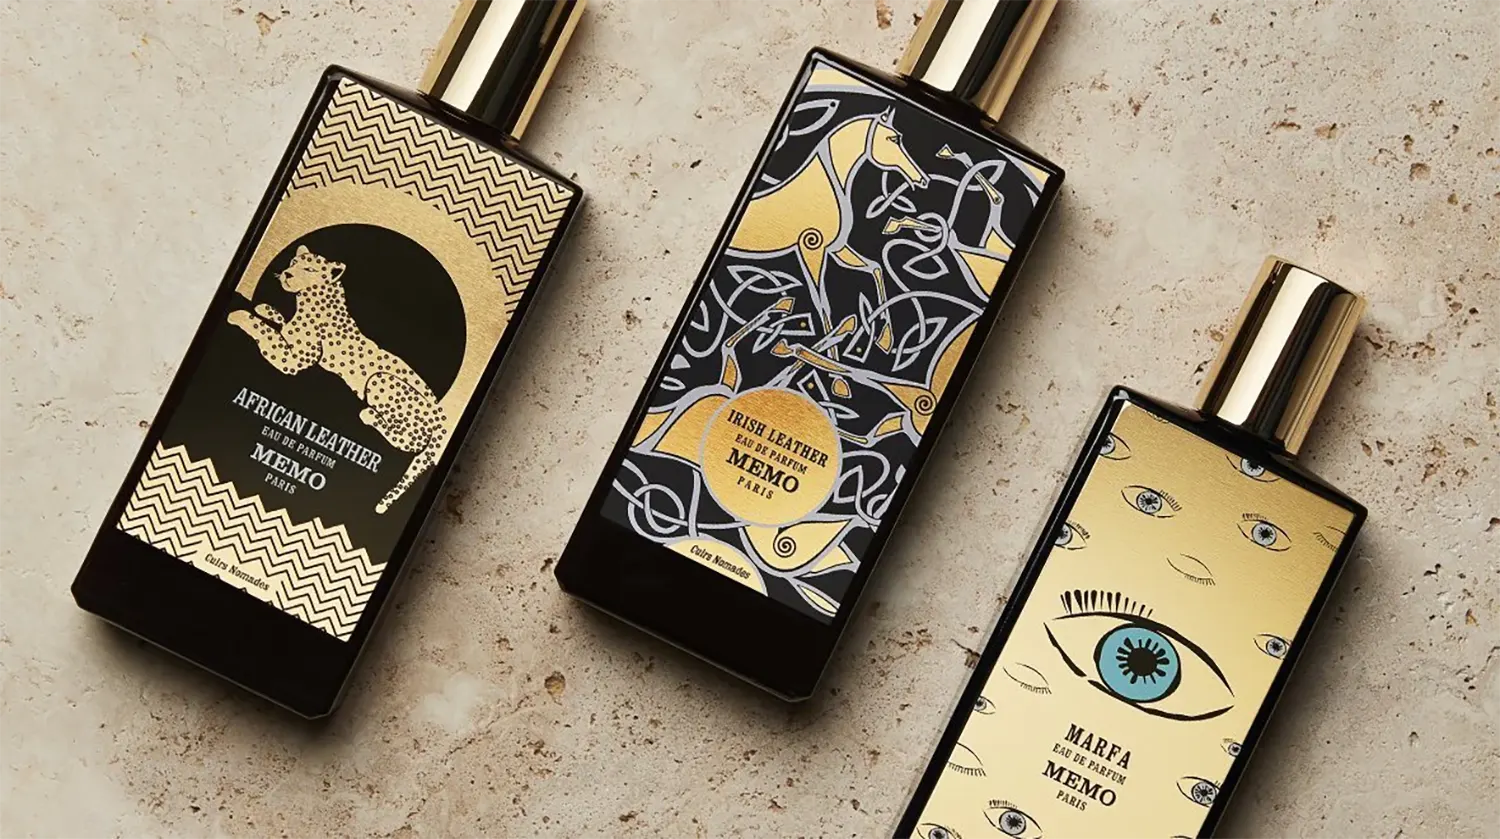 October 2020 Magazine Perfume Ads Fashion Fragrances, Perfume Promotions,  Fragrance Marketing Advertisements